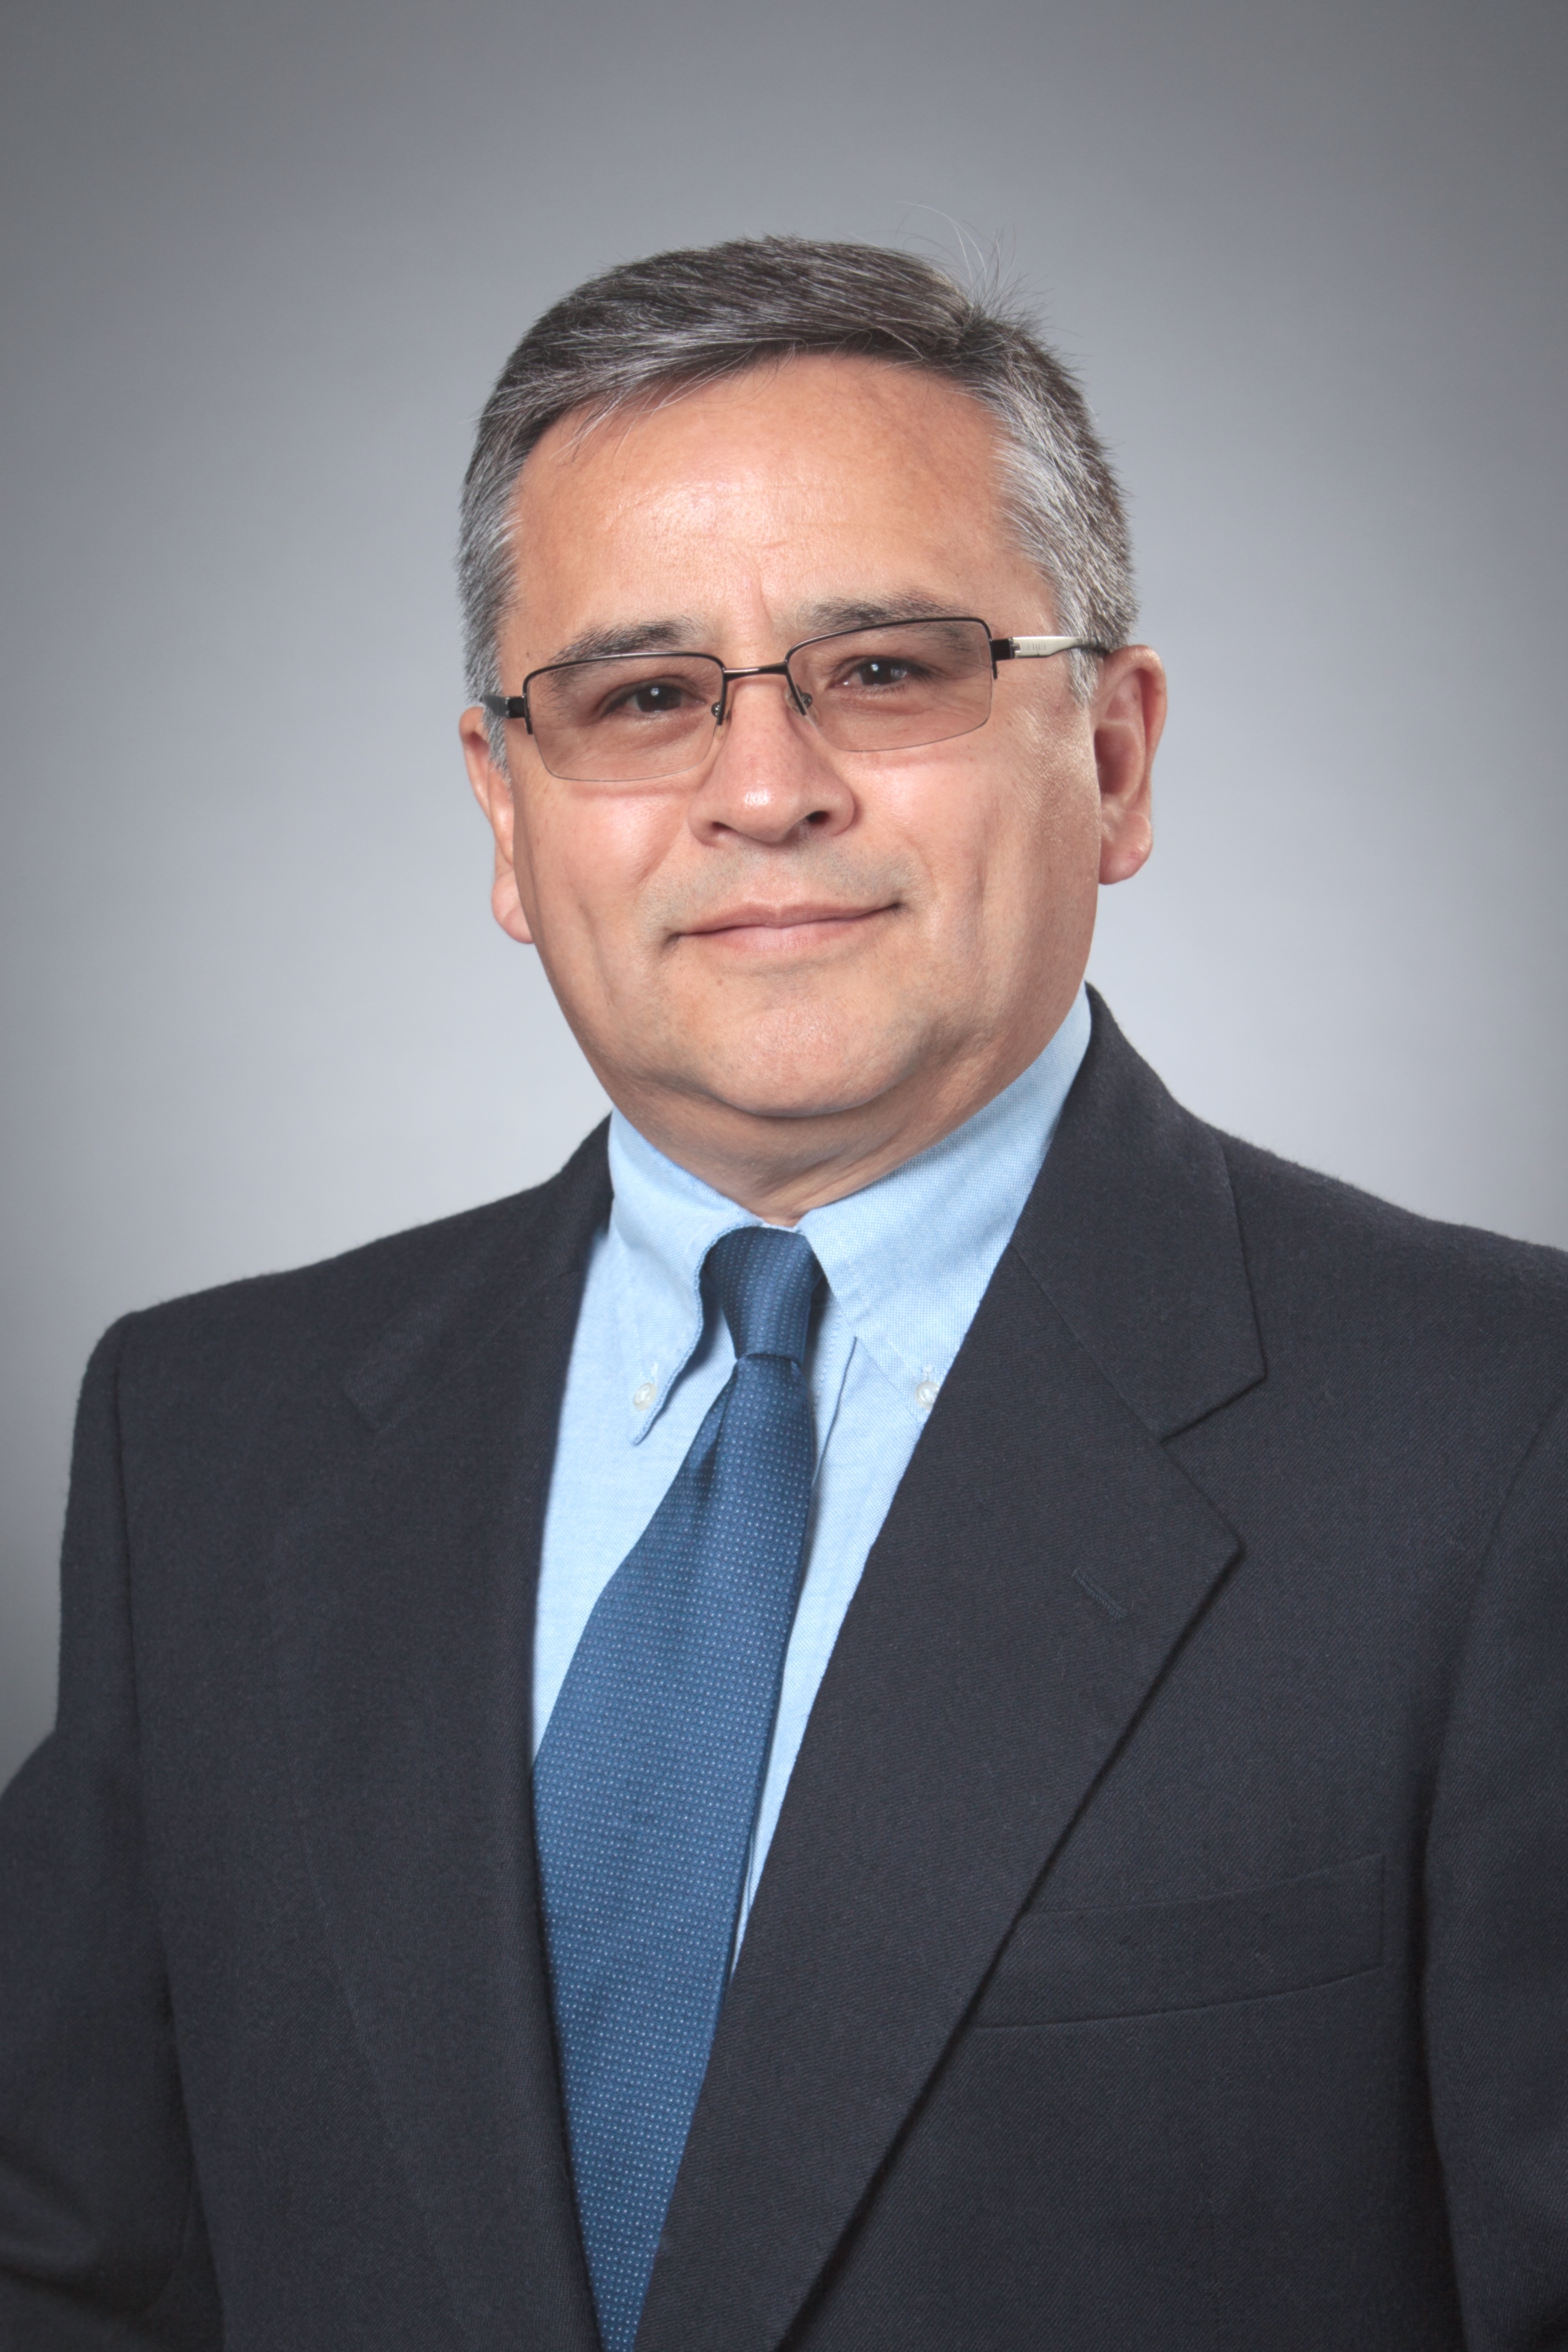 Jorge Salazar-Bravo, Ph.D.